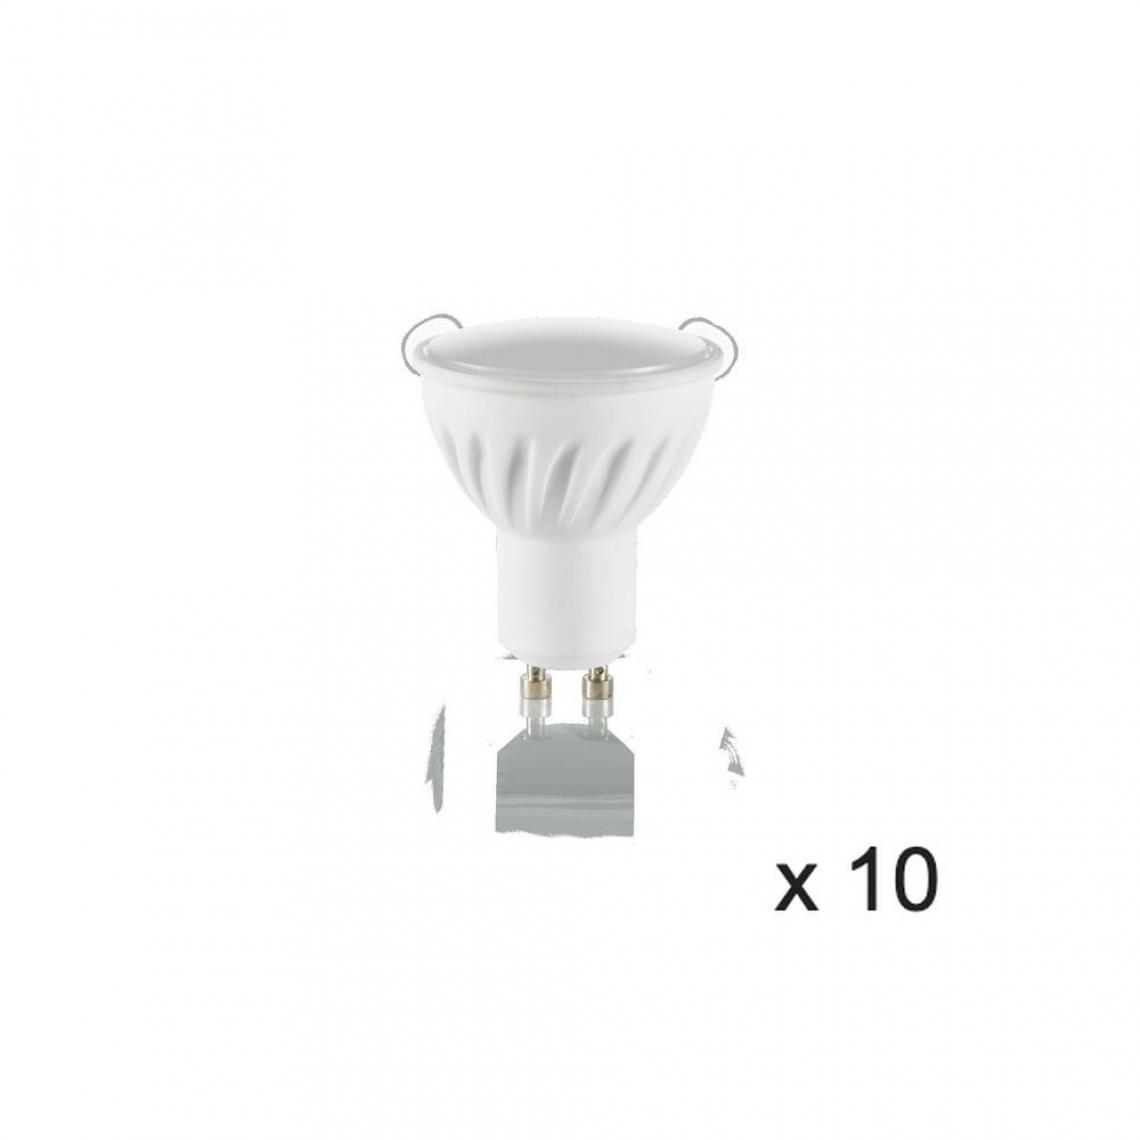 Ideal Lux - Ampoule (x10) 7W GU10 Blanc D5 117652 - Ampoules LED